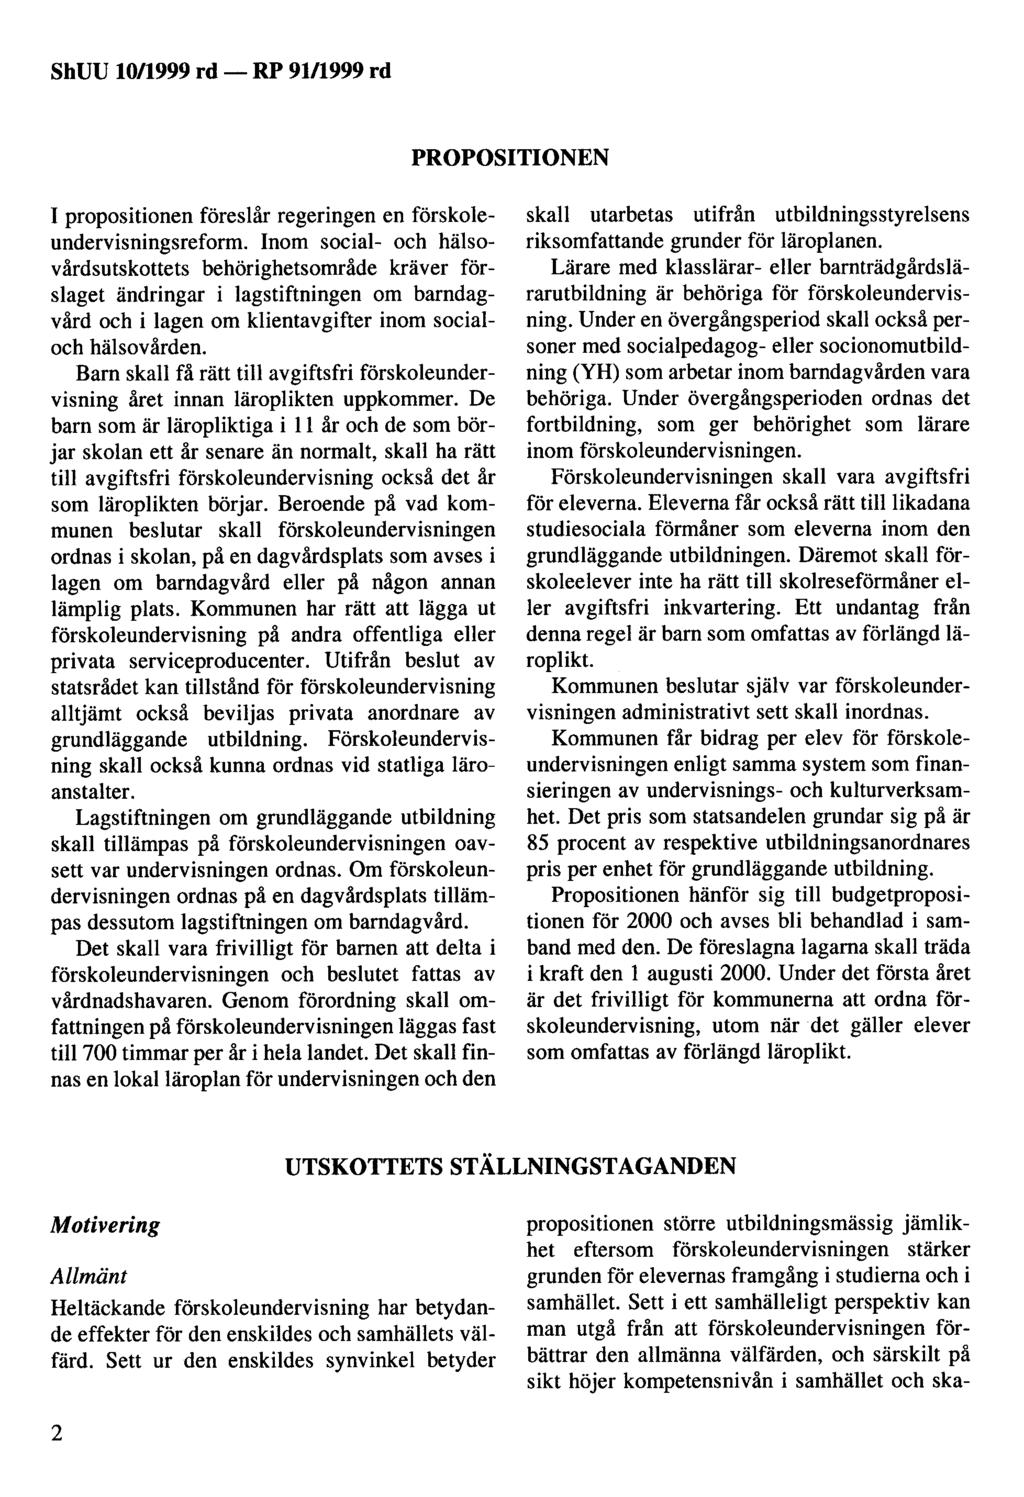 ShUU 10/1999 rd - PROPOSITIONEN I propositionen föreslår regeringen en förskoleundervisningsreform.